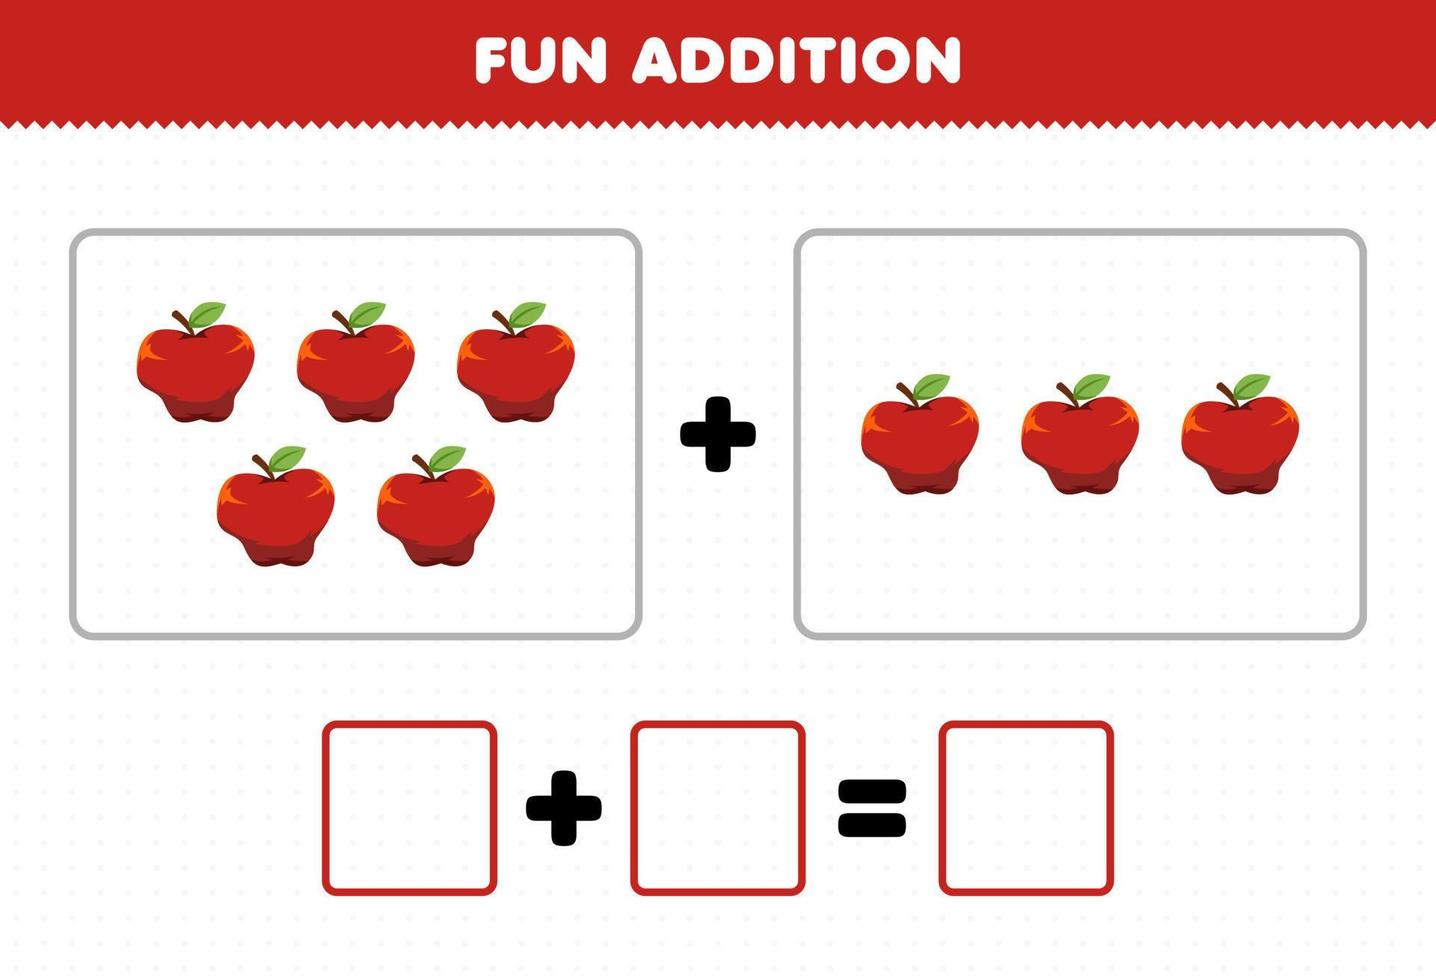 utbildning spel för barn roligt tillägg genom att räkna tecknade frukt äpple bilder kalkylblad vektor